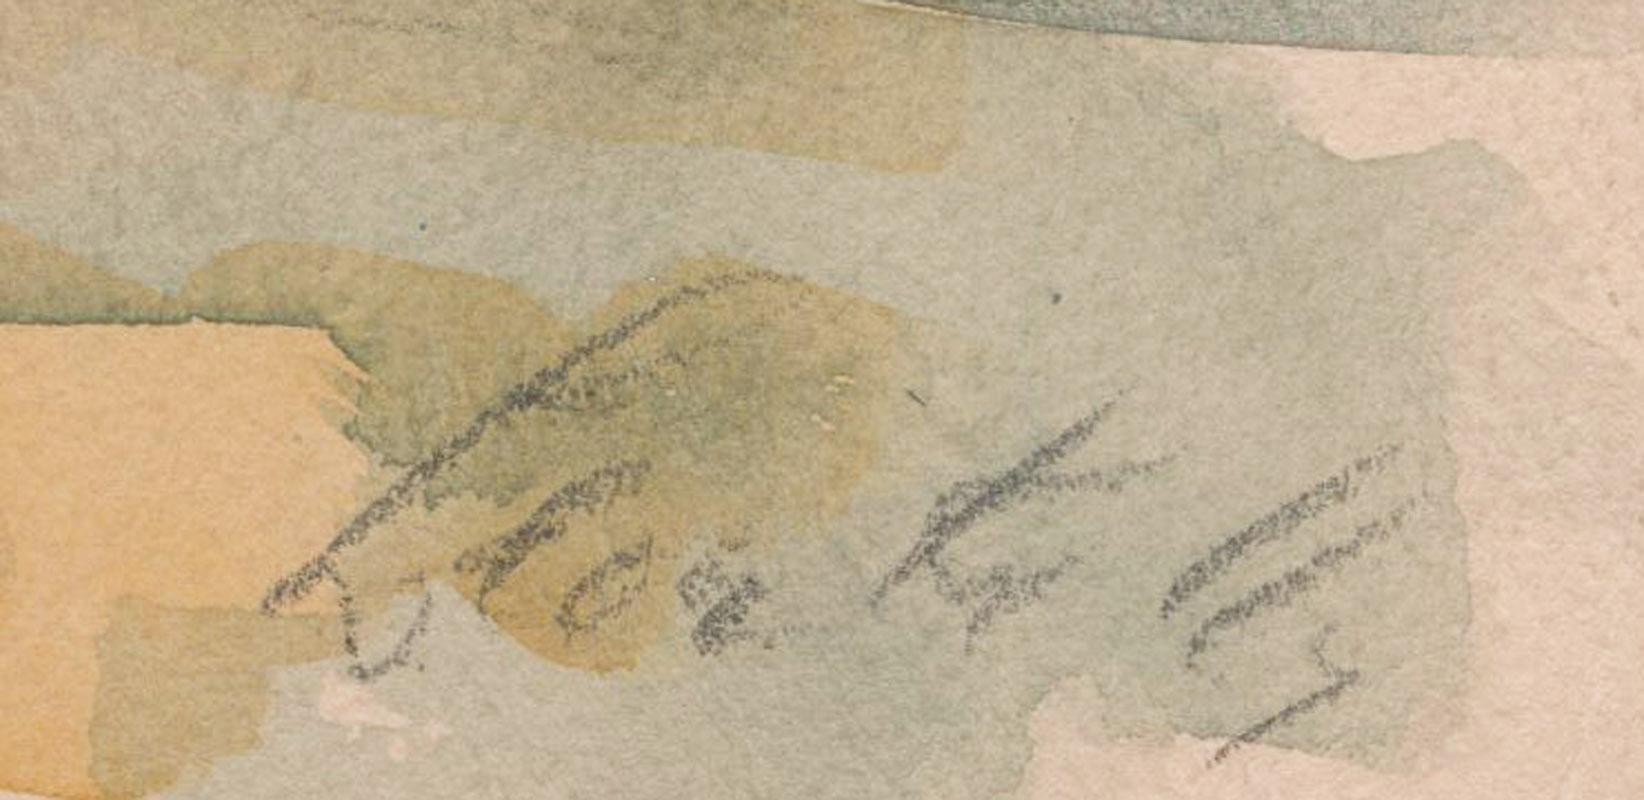 Landschaft mit Bäumen
Aquarell auf Papier, 1929
Signiert mit Bleistift in der rechten unteren Ecke
Offensichtlich beeinflusst von den Cezanne-Werken aus der Sammlung seines Mäzens Alfred C. Barnes aus Philadelphia.
Provenienz: Nachlass des